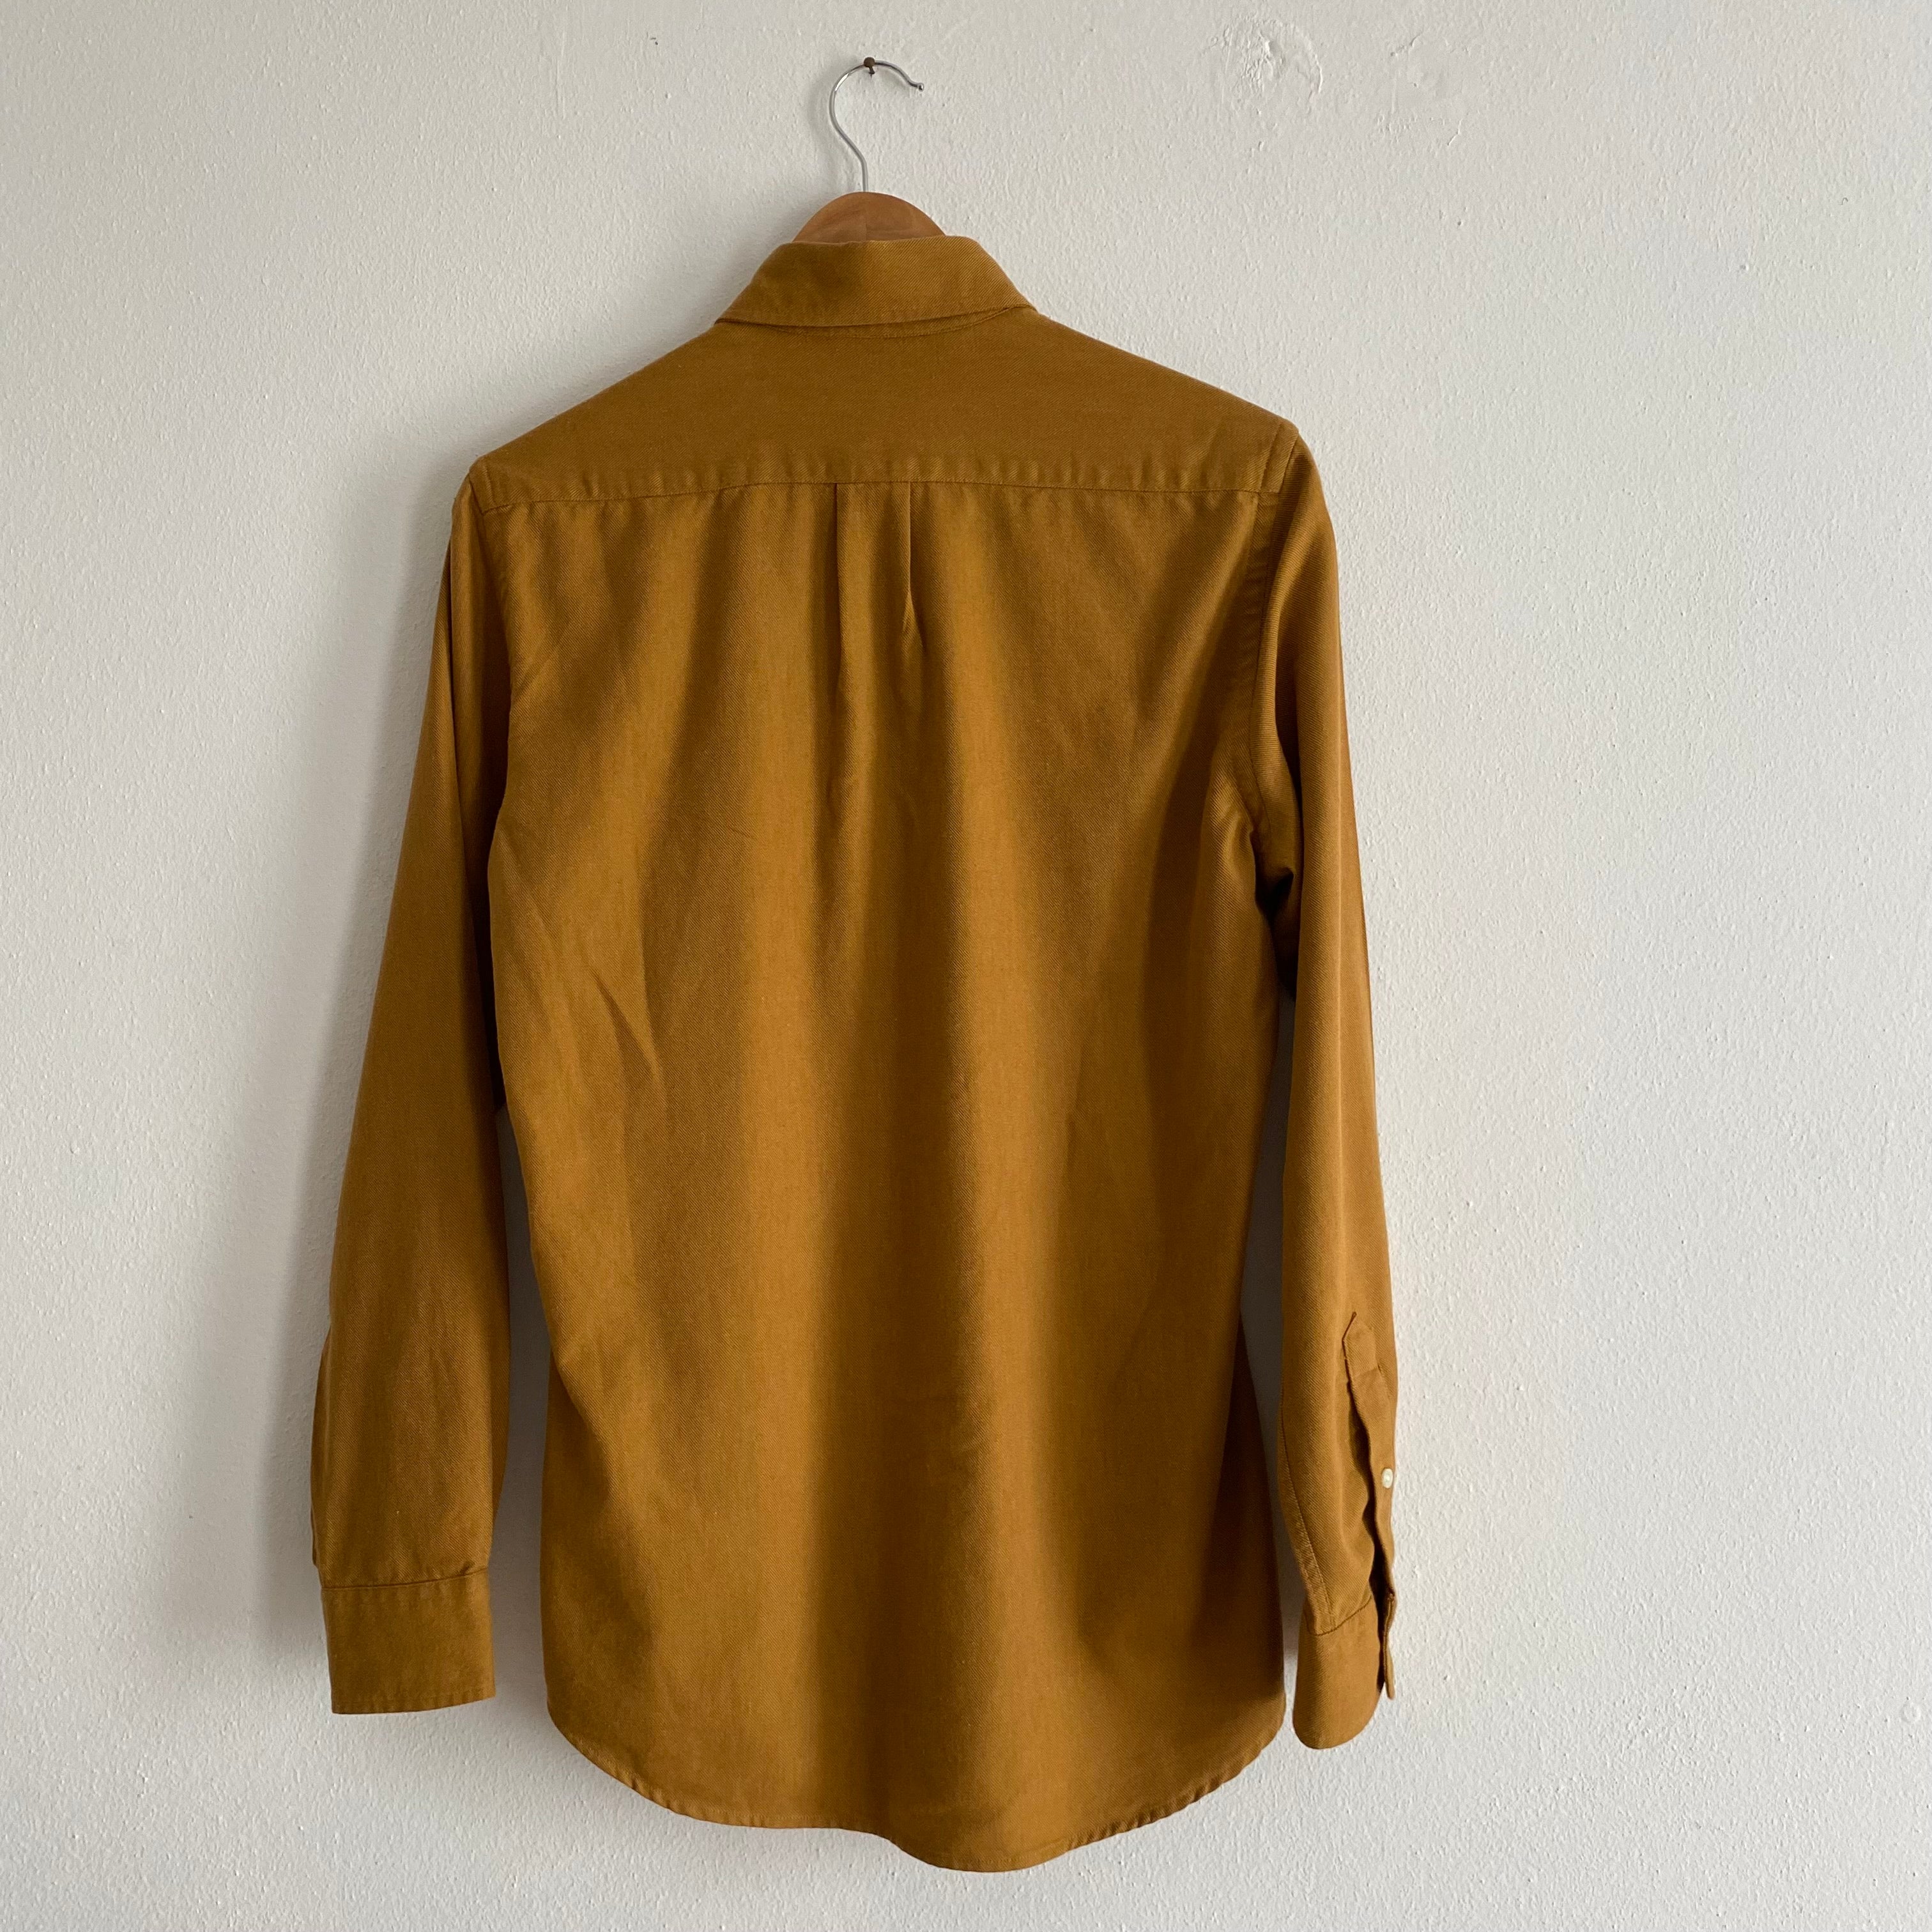 Herringbone Khaki Shirt - S